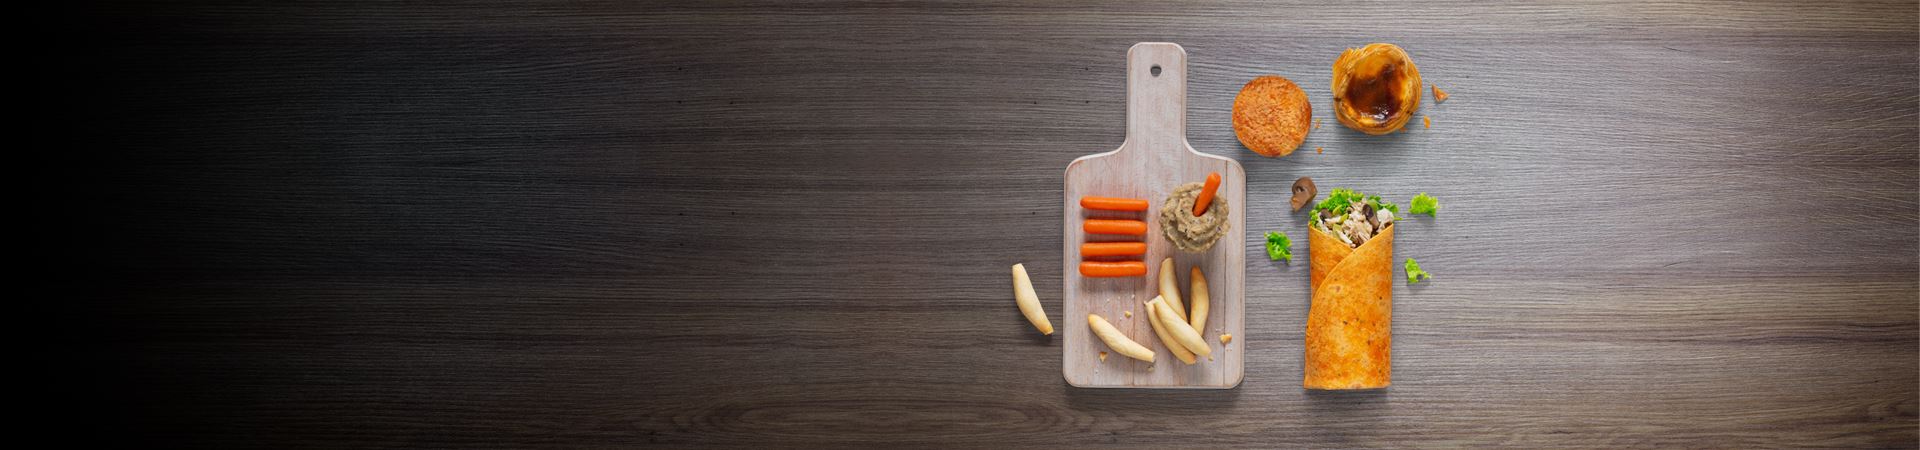 Zdjęcie drewnianego stołu z 4 elementami: tacą z marchewkami, paluszkami chlebowymi i miską z sosem; wrap z kurczakiem, pieczarkami i sałatą; pasztecik z fasolą oraz tartę z kremem.